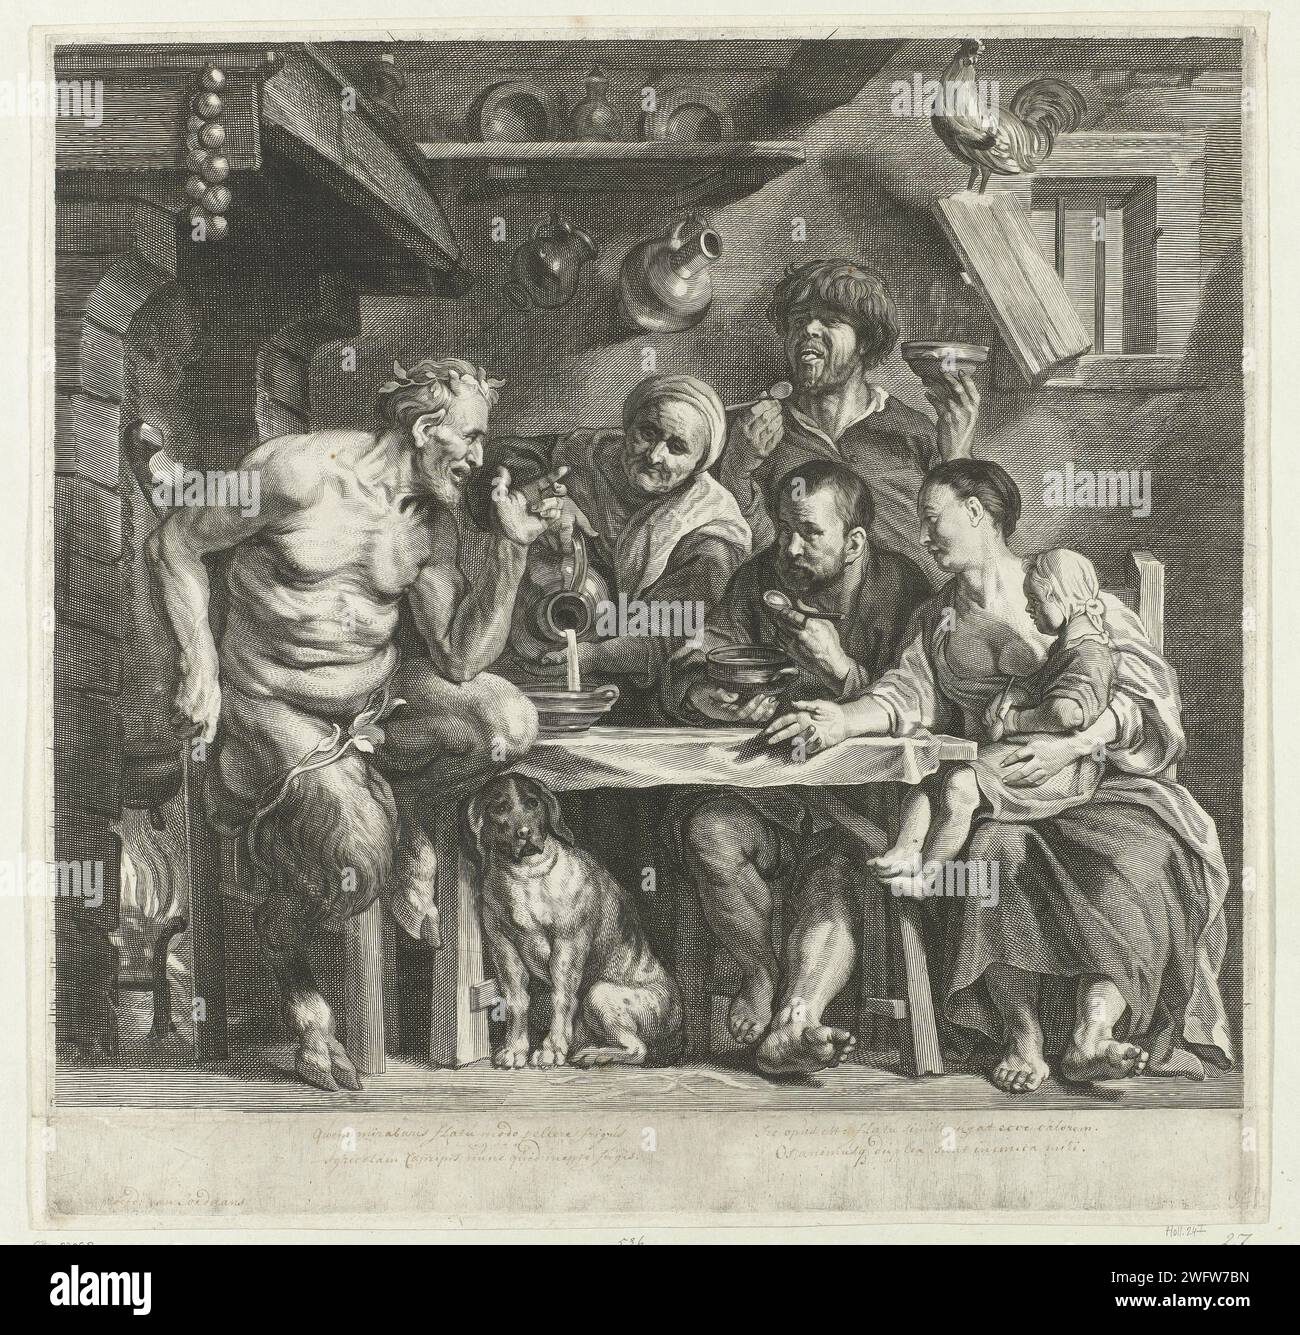 Favola del Sater e De Boer, Jacob Neefs, dopo Jacques Jordaens, 1620 - 1680 stampa Un sater e la sua famiglia sono seduti al tavolo nell'interno di un contadino. Una donna anziana versa la zuppa in una ciotola davanti al saat. Questa è l'immaginazione di una favola, in cui un viaggiatore è ospite di un Sater e della sua famiglia. L'ospite prima soffiava nelle sue mani intorpide e poi nella sua zuppa. Il Sater ha poi detto che il viaggiatore non poteva essere suo ospite, perché poteva soffiare calore e freddo dalla sua stessa bocca. Carta di Anversa che incide il satiro e i contadini; secondo Esopo: I satiri e il contadino Foto Stock